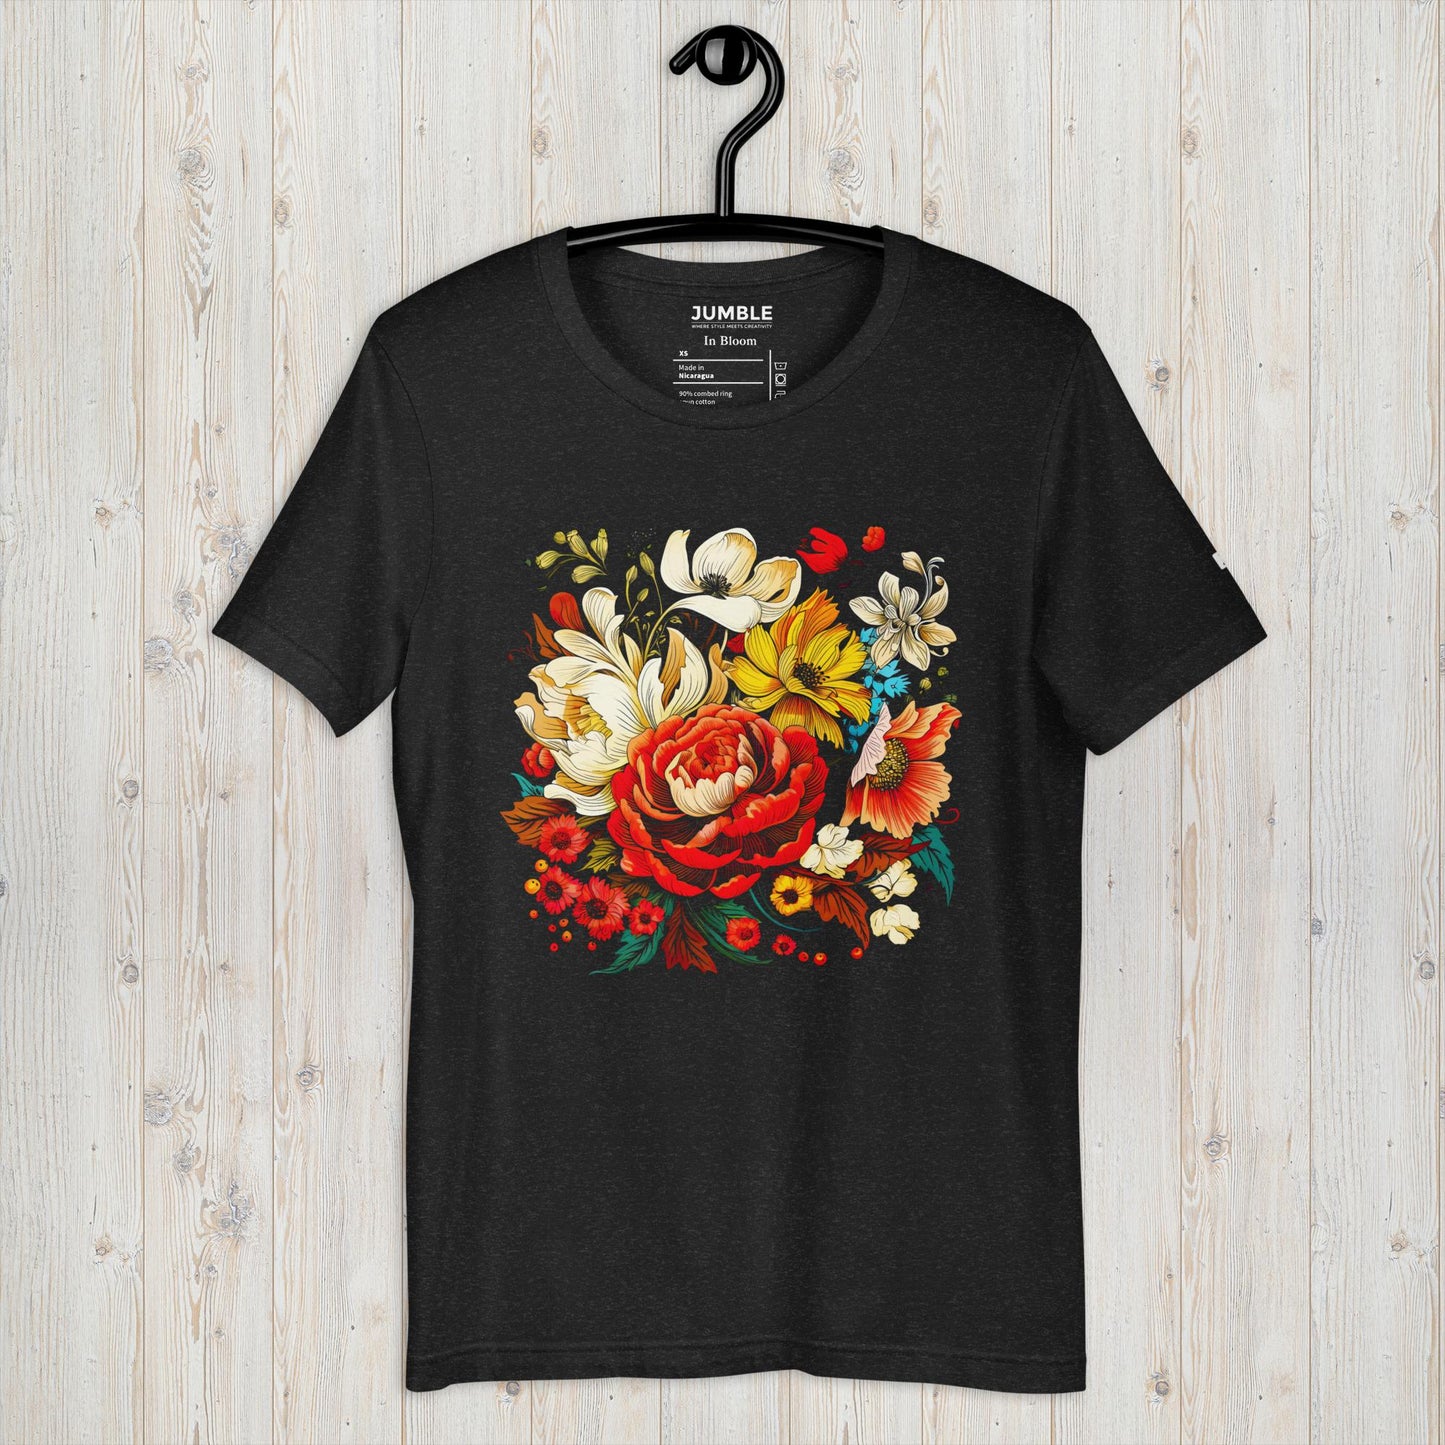 In Bloom Unisex T-Shirt - Black Heather Color - On Hanger